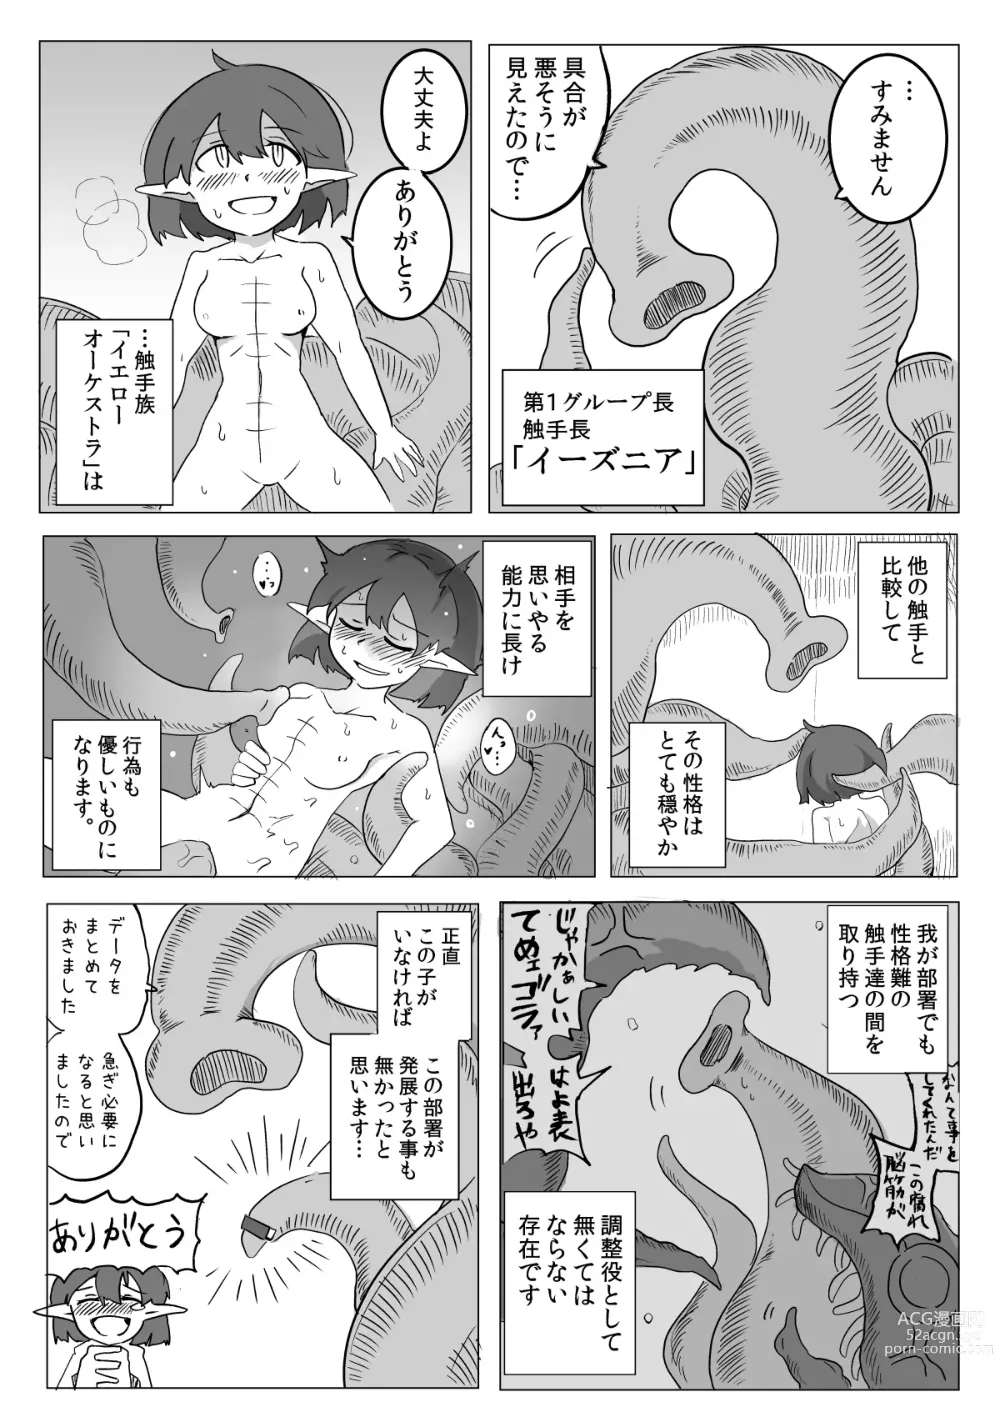 Page 17 of doujinshi Watashi to Shokushu no Kyuuryoubi